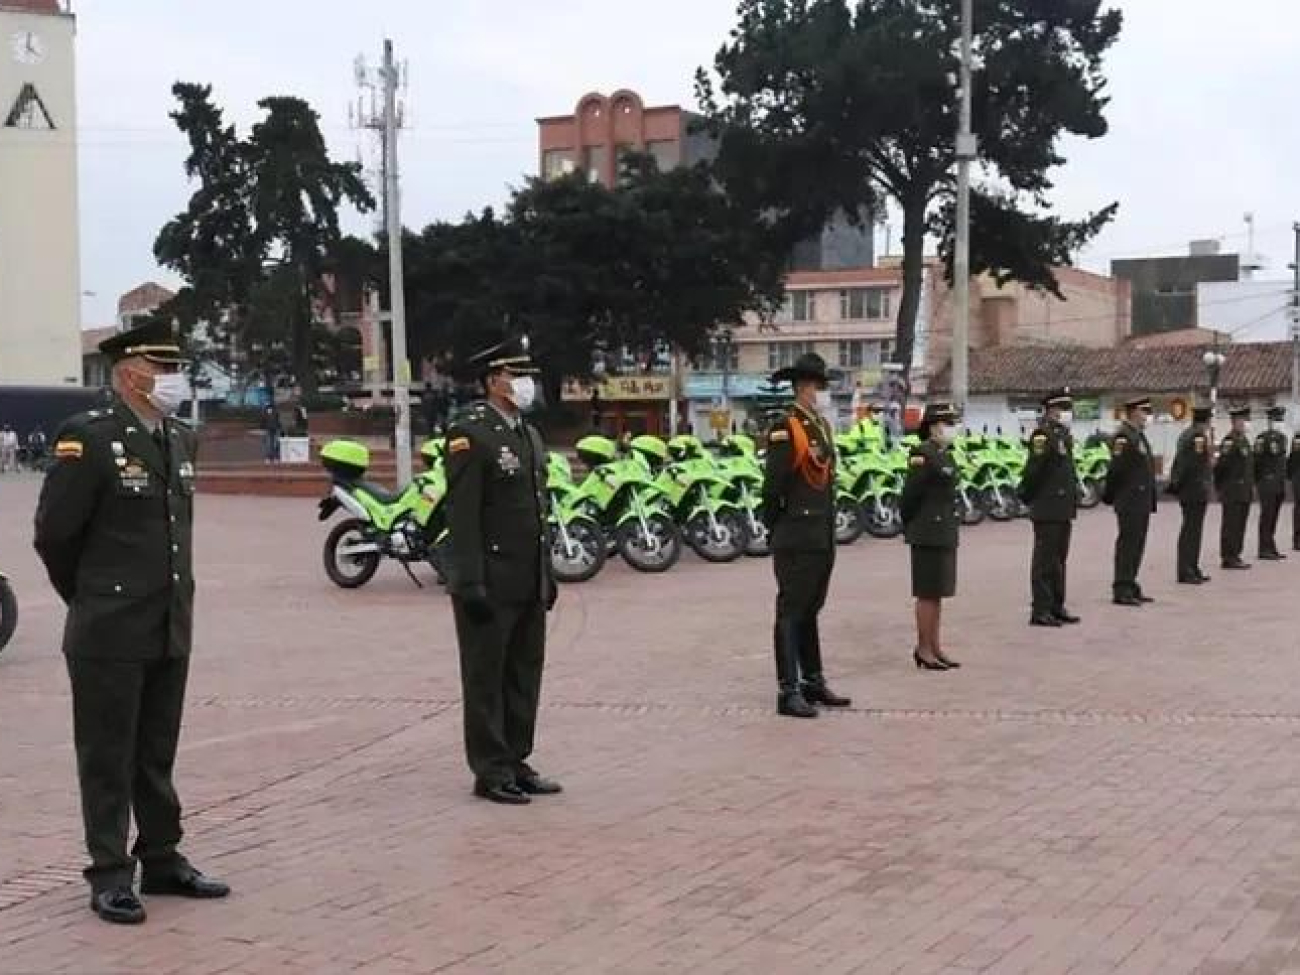 Policia nacional de colombia